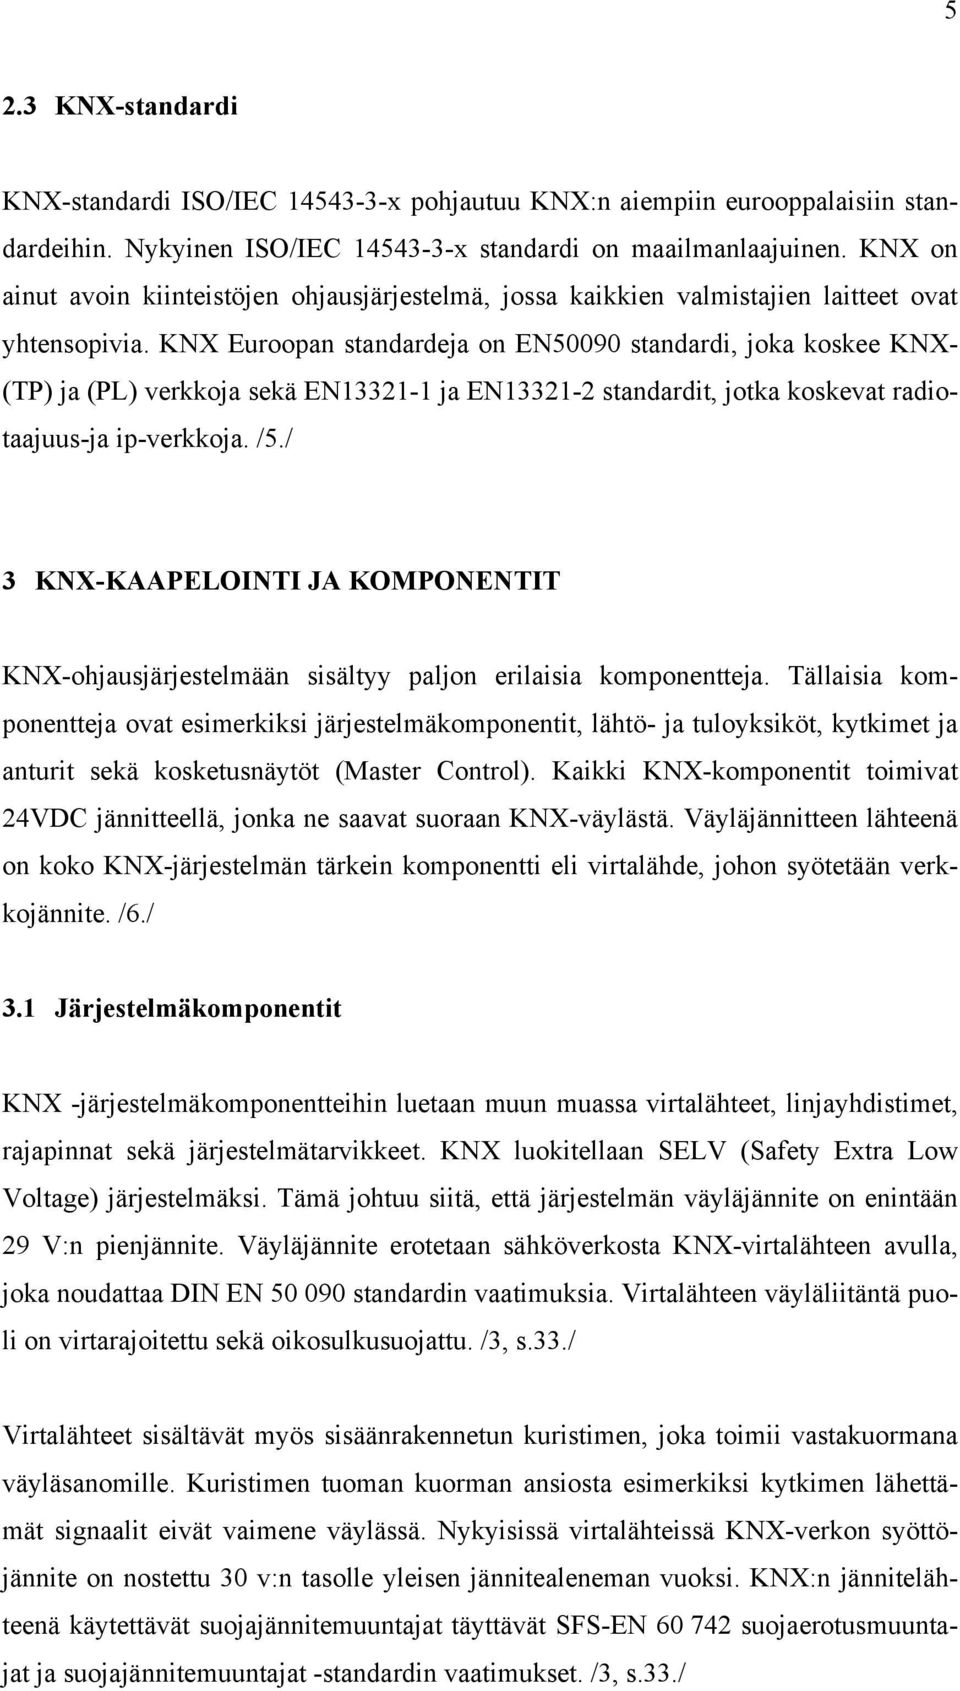 KNX Euroopan standardeja on EN50090 standardi, joka koskee KNX- (TP) ja (PL) verkkoja sekä EN13321-1 ja EN13321-2 standardit, jotka koskevat radiotaajuus-ja ip-verkkoja. /5.